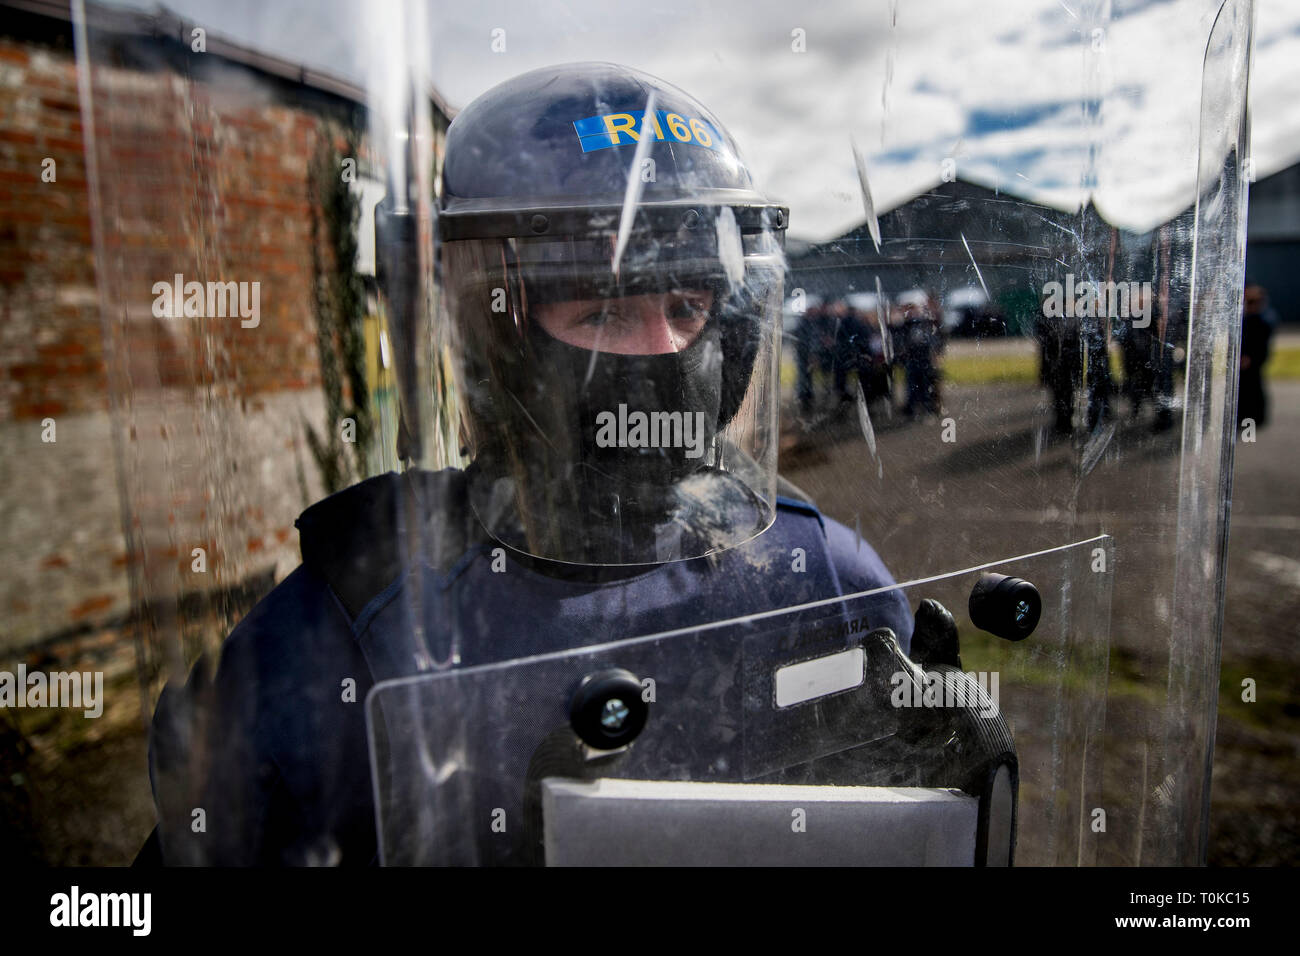 Mitglied der Garda Siochana posiert im Riot Schutzkleidung und -ausrüstung nach einer öffentlichen Bestellung Ausbildung Übung in Gormanston Army Camp, Co Meath, Irland. Stockfoto